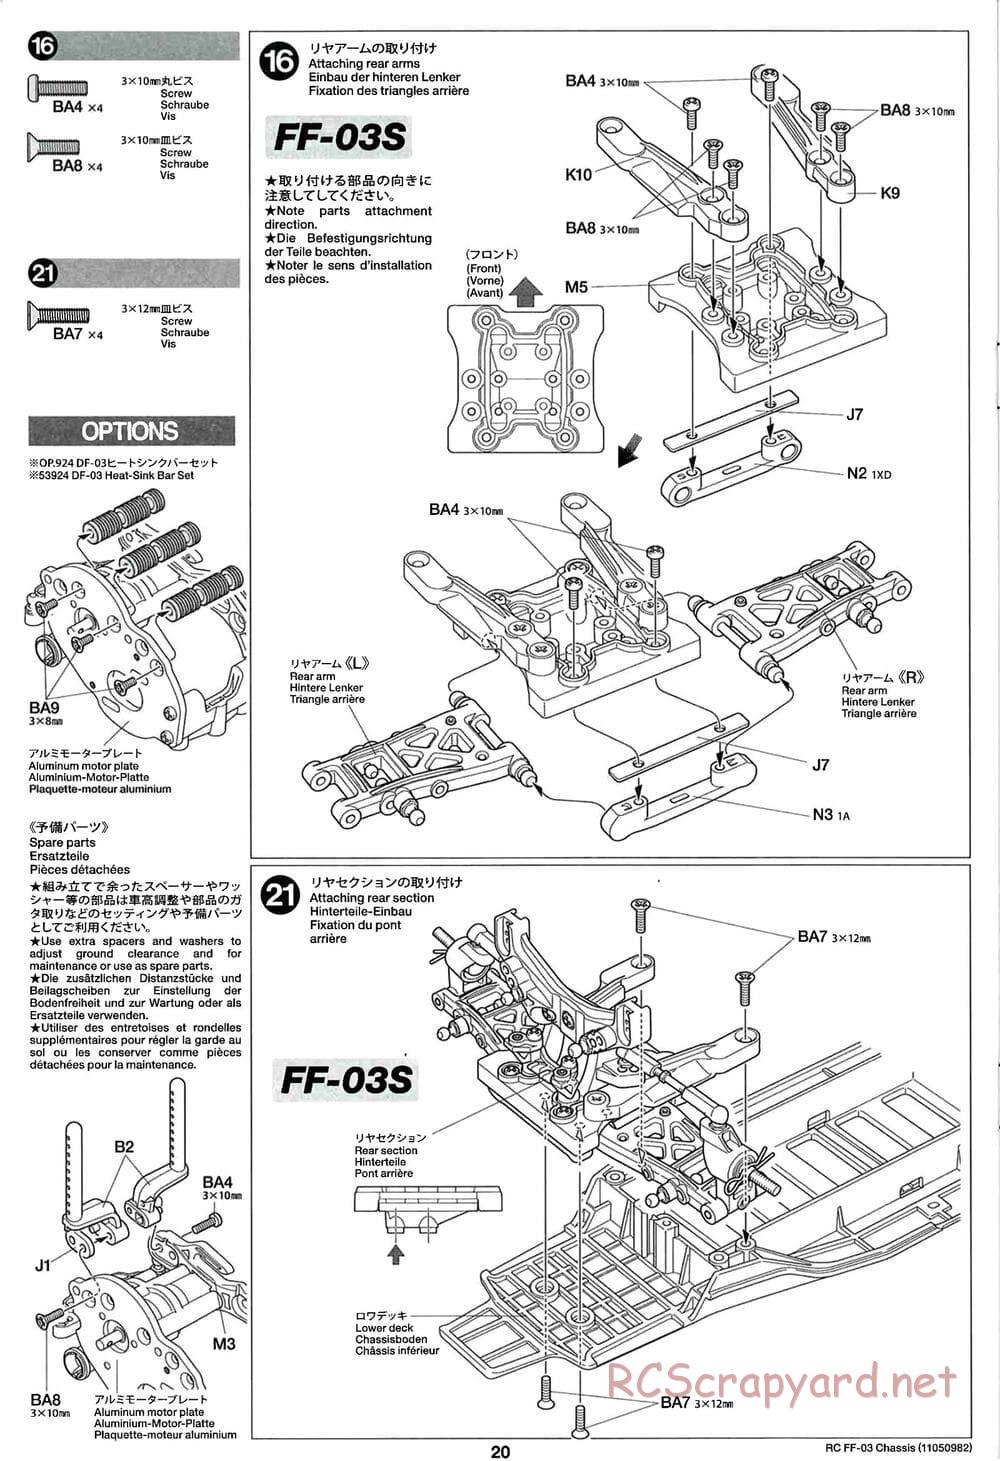 Tamiya - Honda CR-Z - FF-03 Chassis - Manual - Page 20